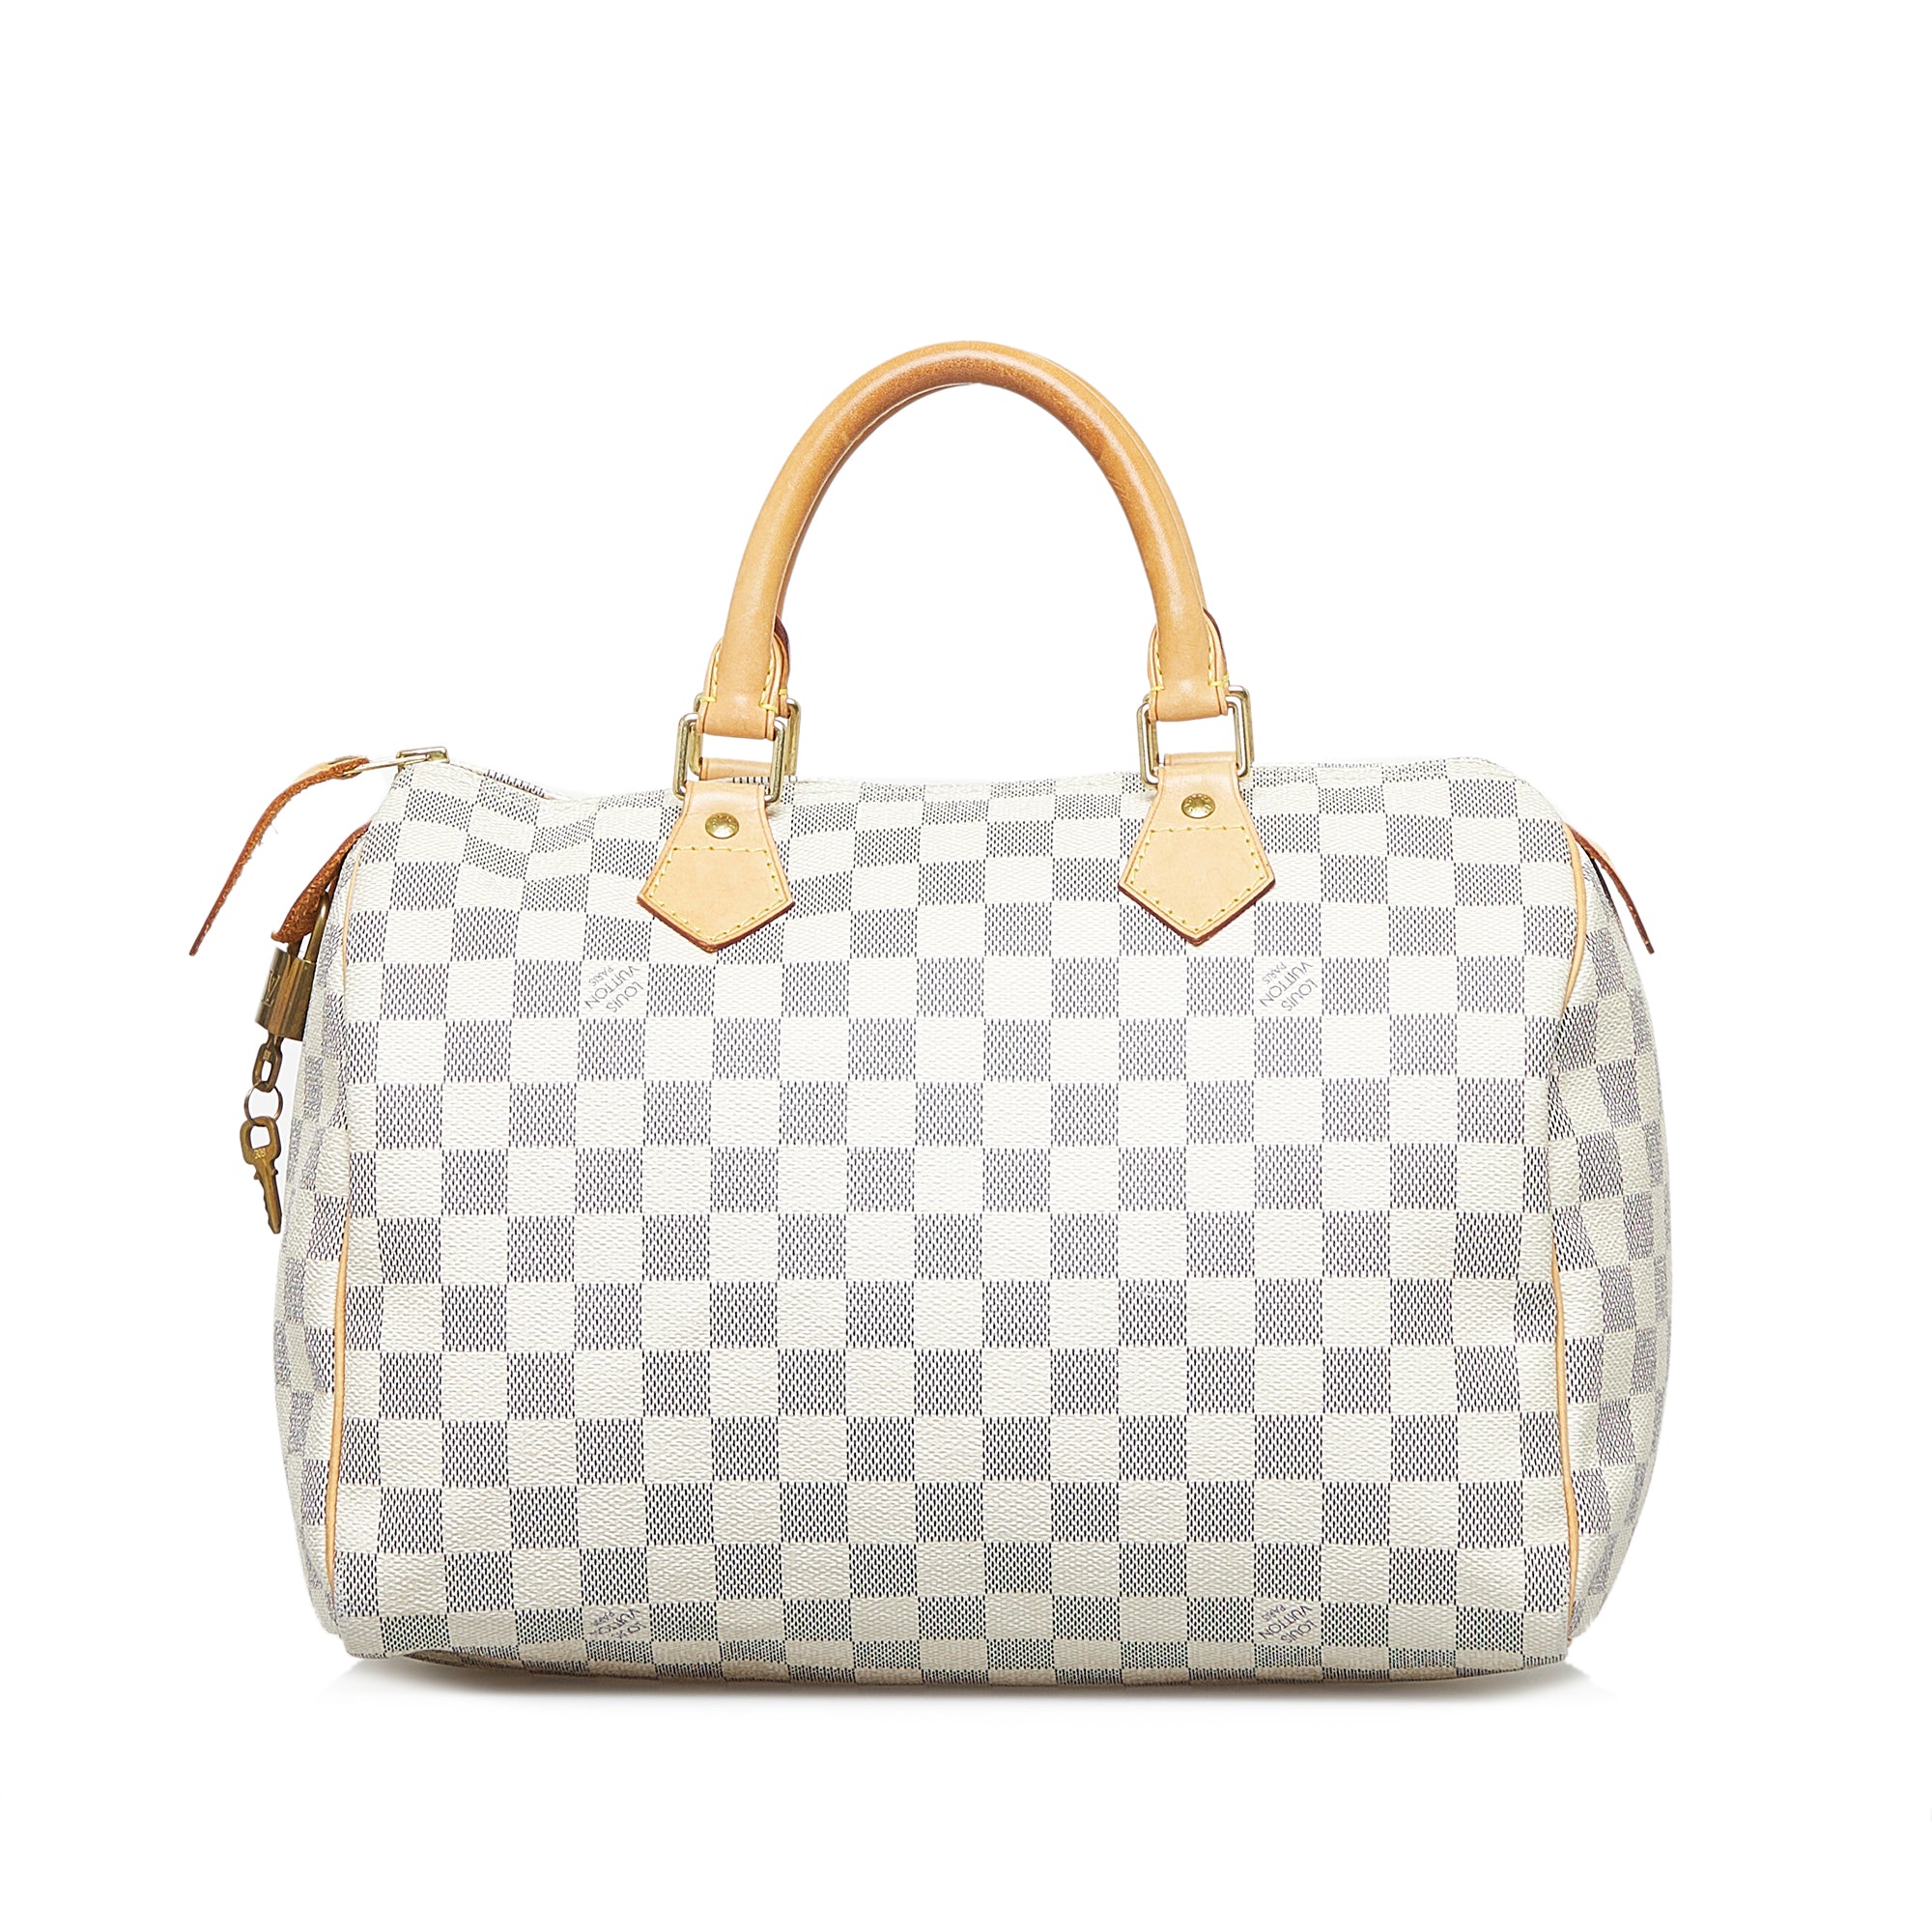 White Louis Vuitton Damier Azur Speedy 30 Boston Bag